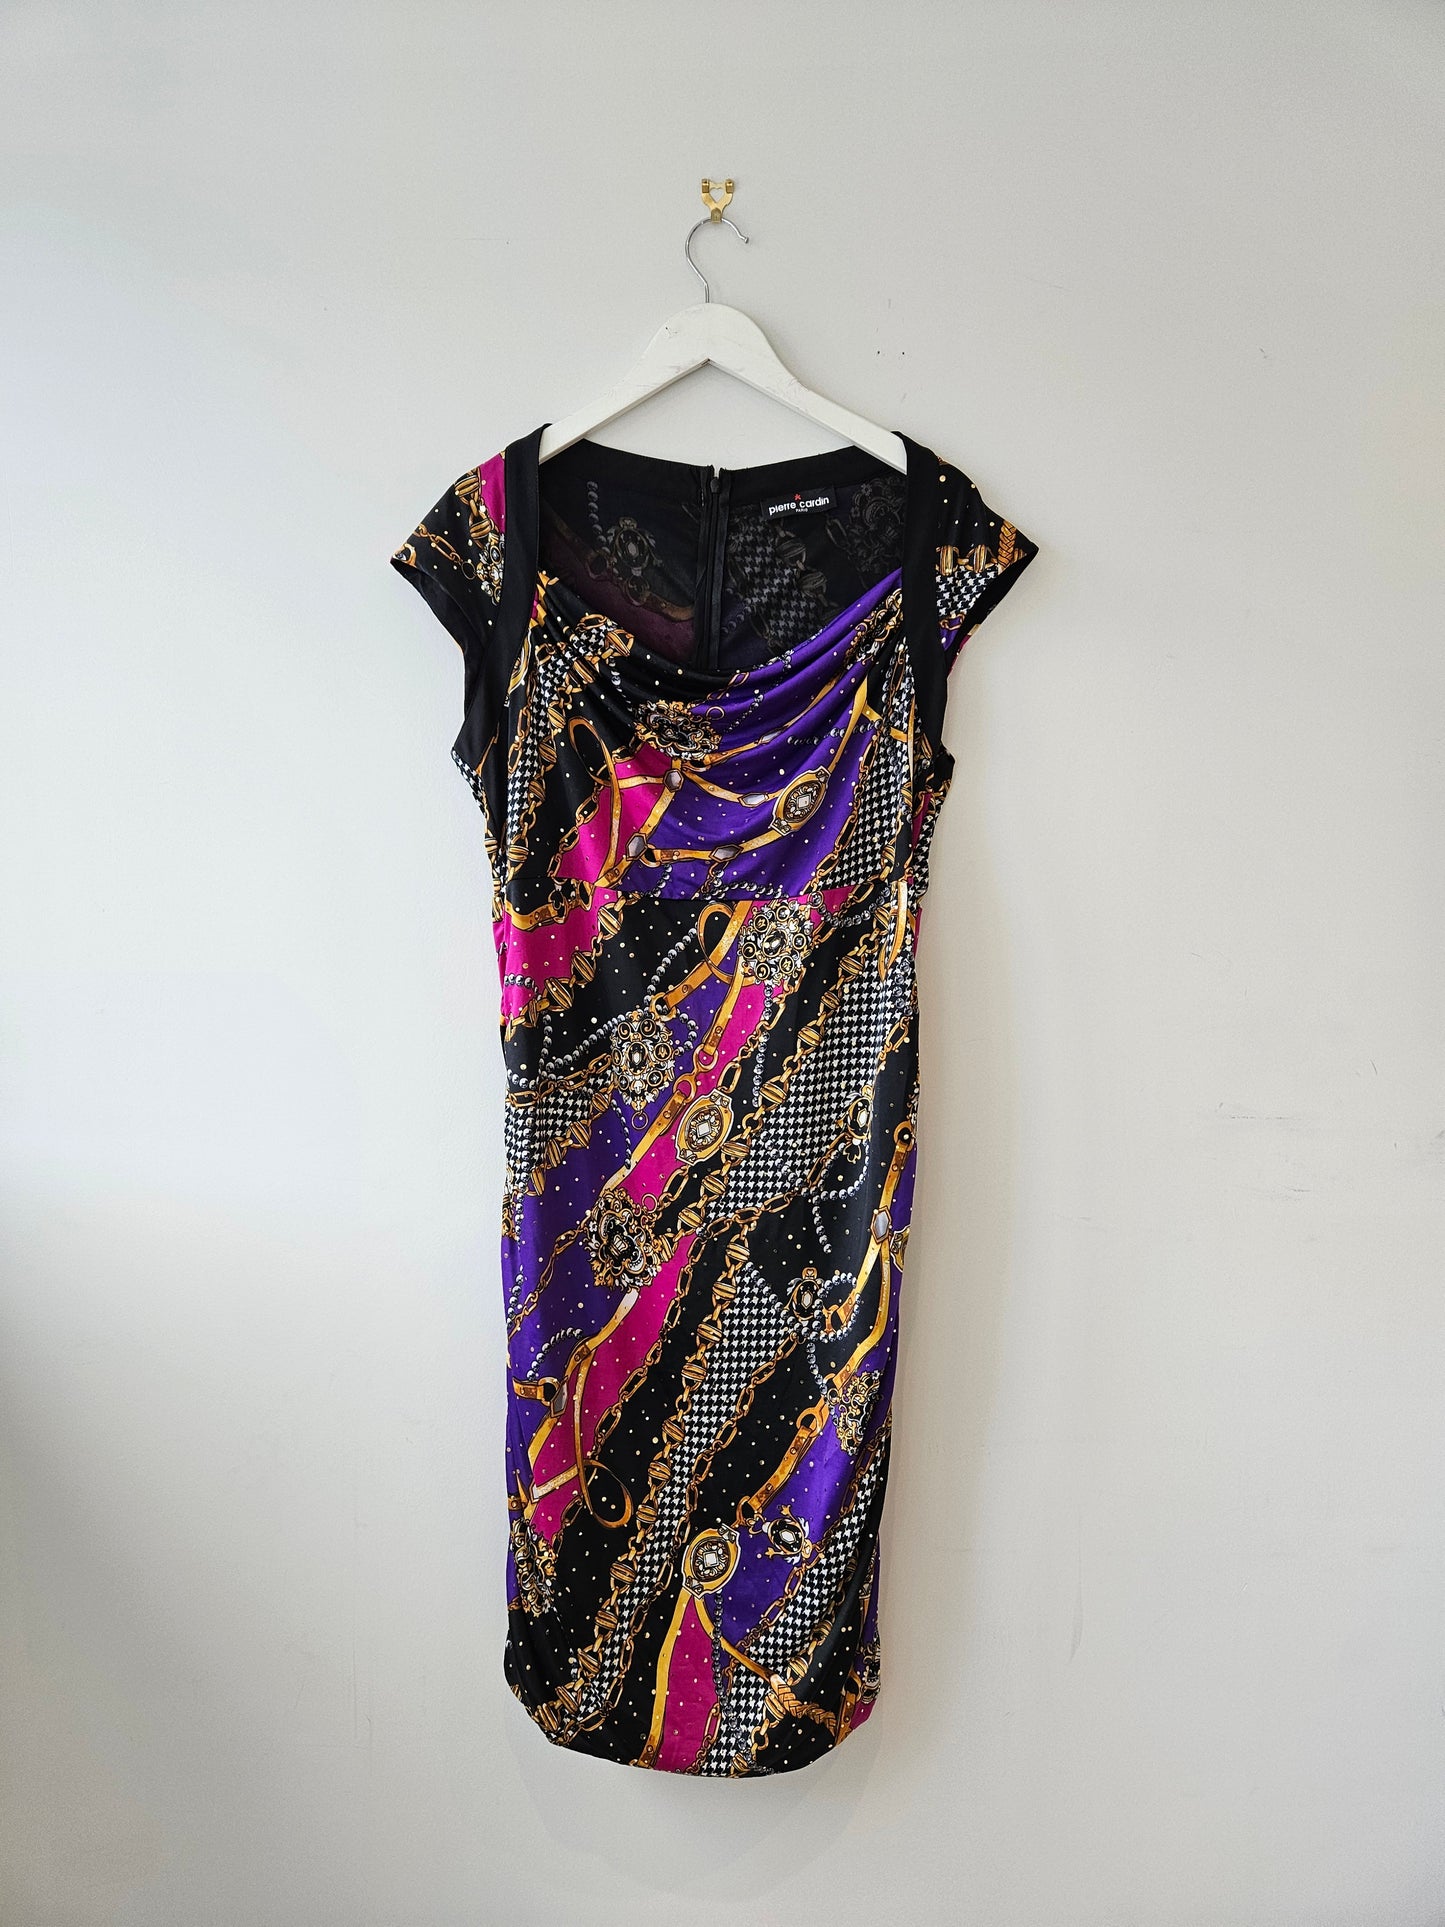 PIERRE CARDIN Sparkly Chain Print Dress Sz16